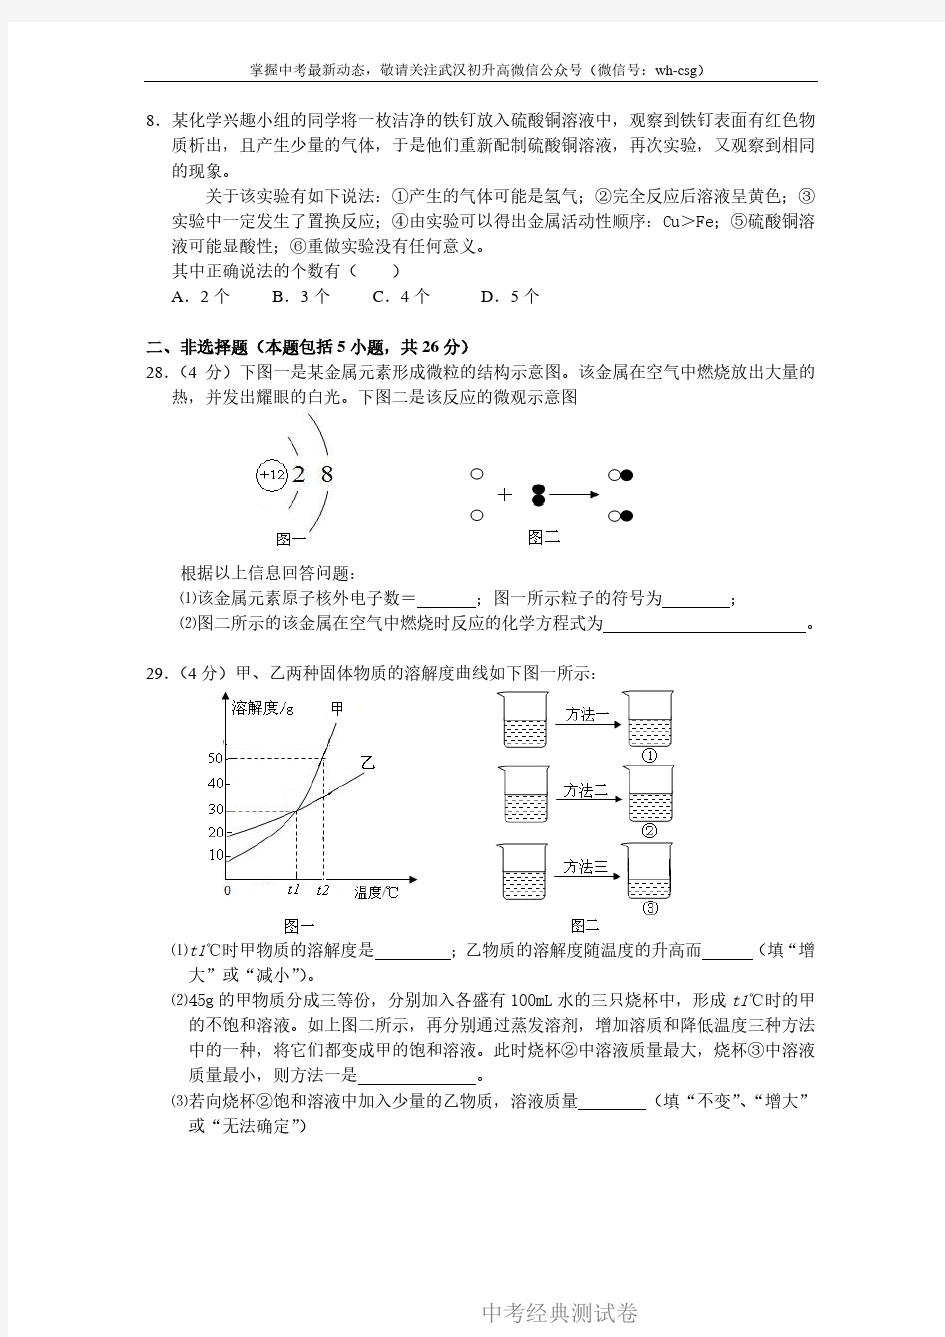 2014武汉中考化学试卷及答案.pdf